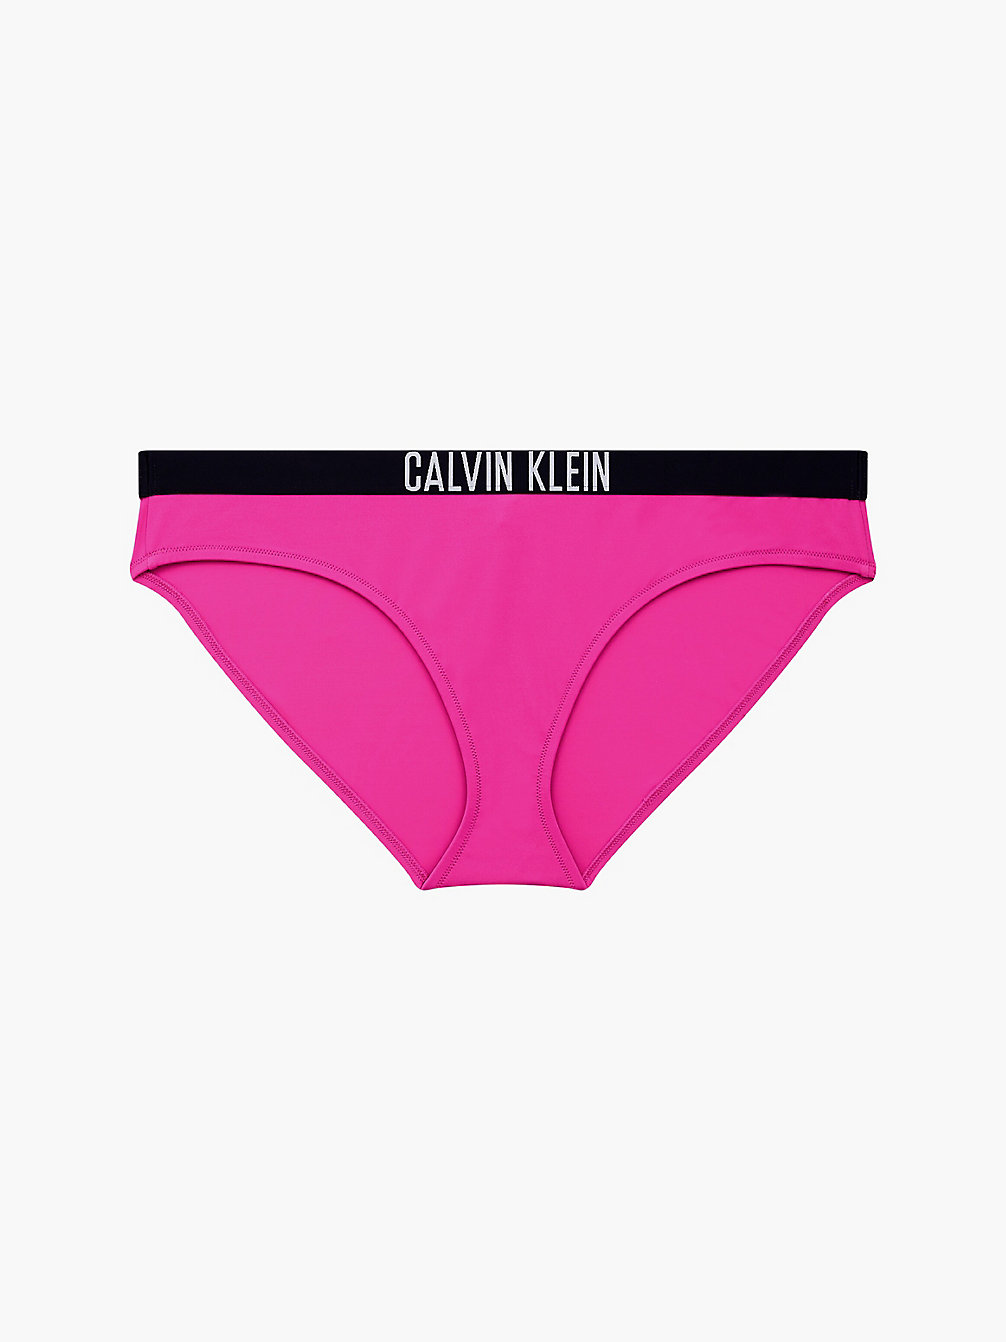 Calvin klein signature logo bikini sale